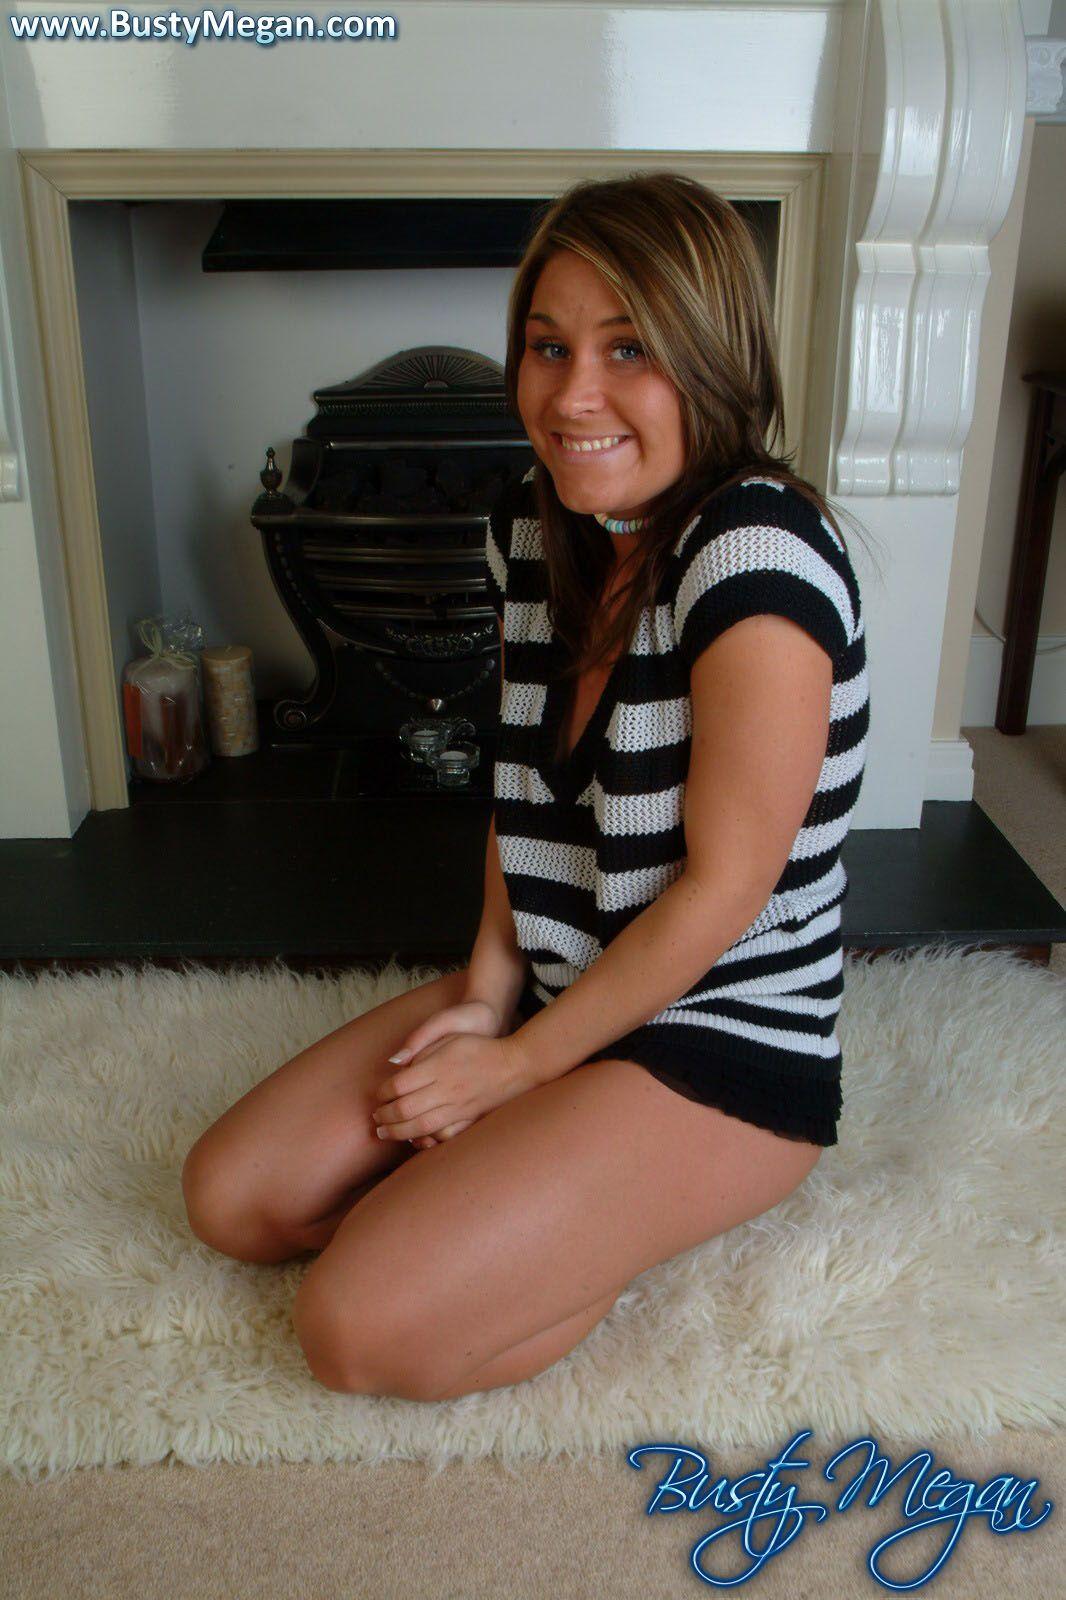 Bilder von der vollbusigen Megan, die ihre schönen Titten zeigt
 #53594333